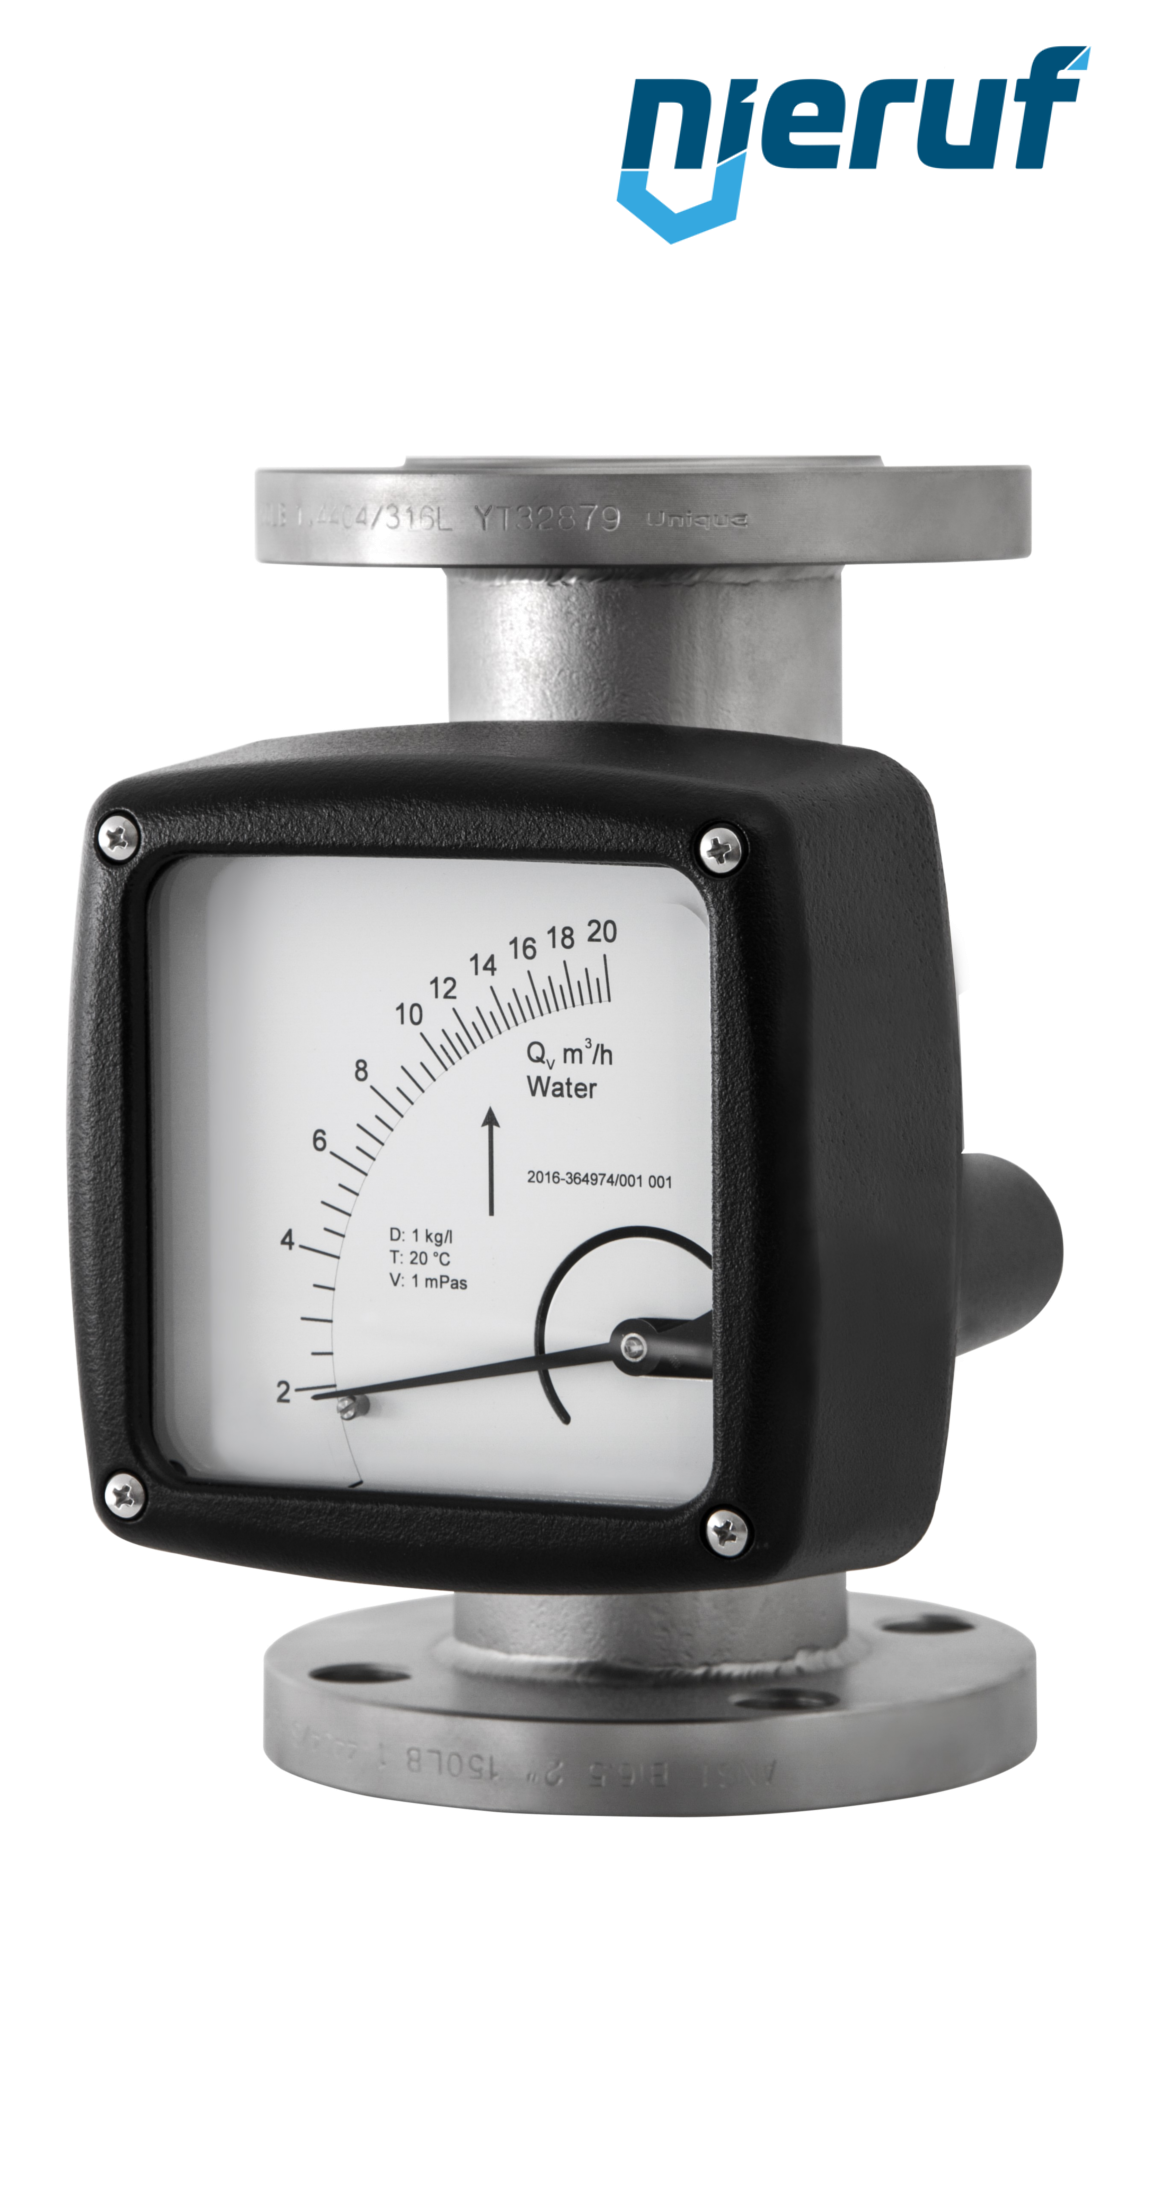 misuratore di flusso / rotametro completamente in metallo DN125-attacco 300,0 - 3000,0 m3/h tubo DN100 aria